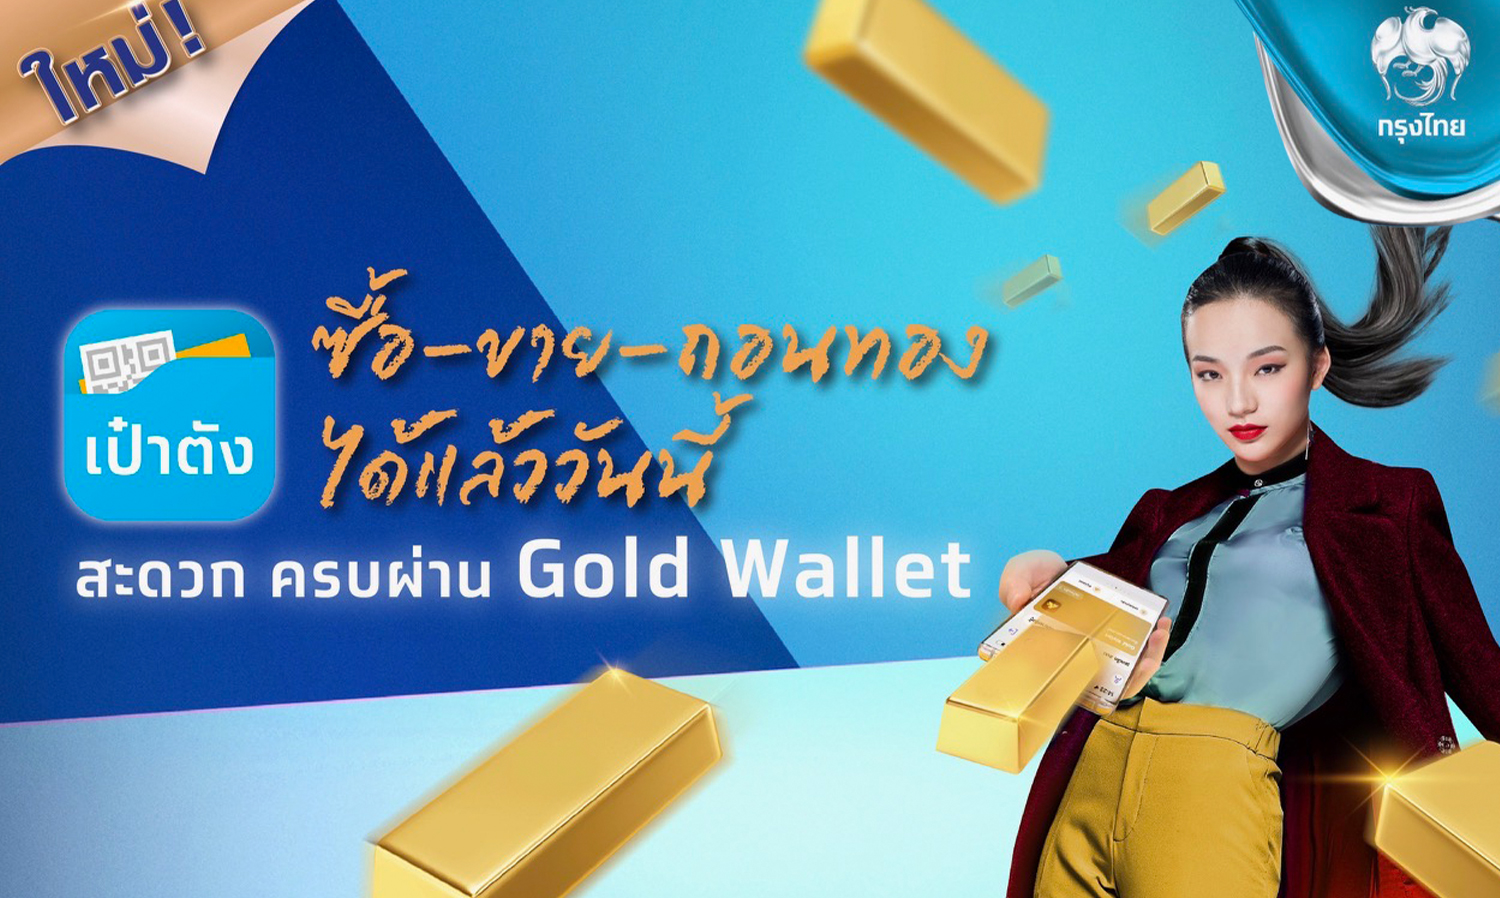 “กรุงไทย” ตอกย้ำผู้นำ Gold Wallet เปิด “ถอนทองออนไลน์” หนุนลงทุนทอง ซื้อ-ขาย-ถอน ครบจบในแอปฯเดียวผ่าน “เป๋าตัง”